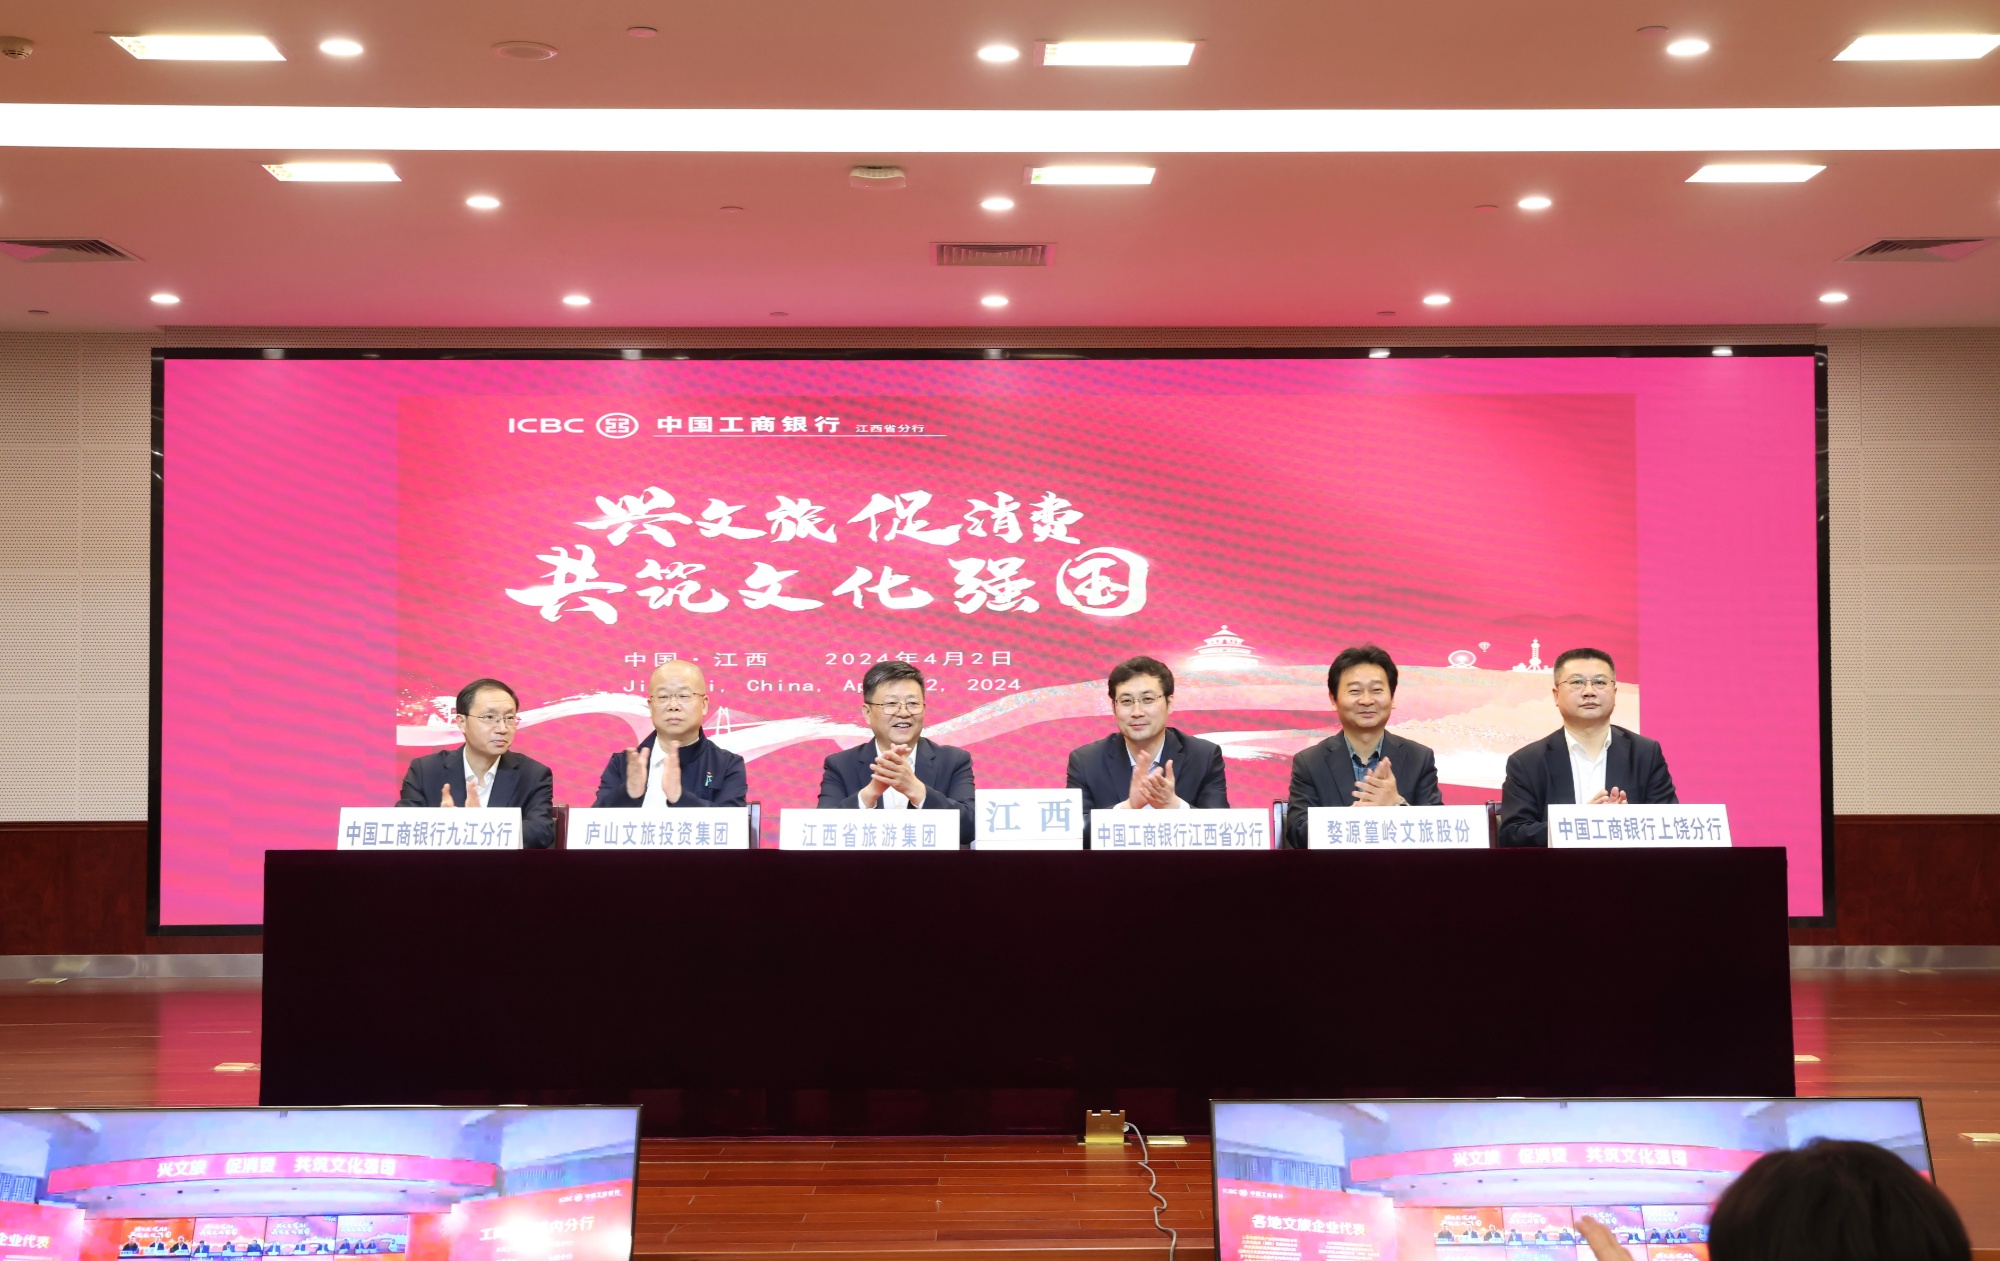  中国工商银行江西省分行与江西省文化和旅游厅签署战略合作协议